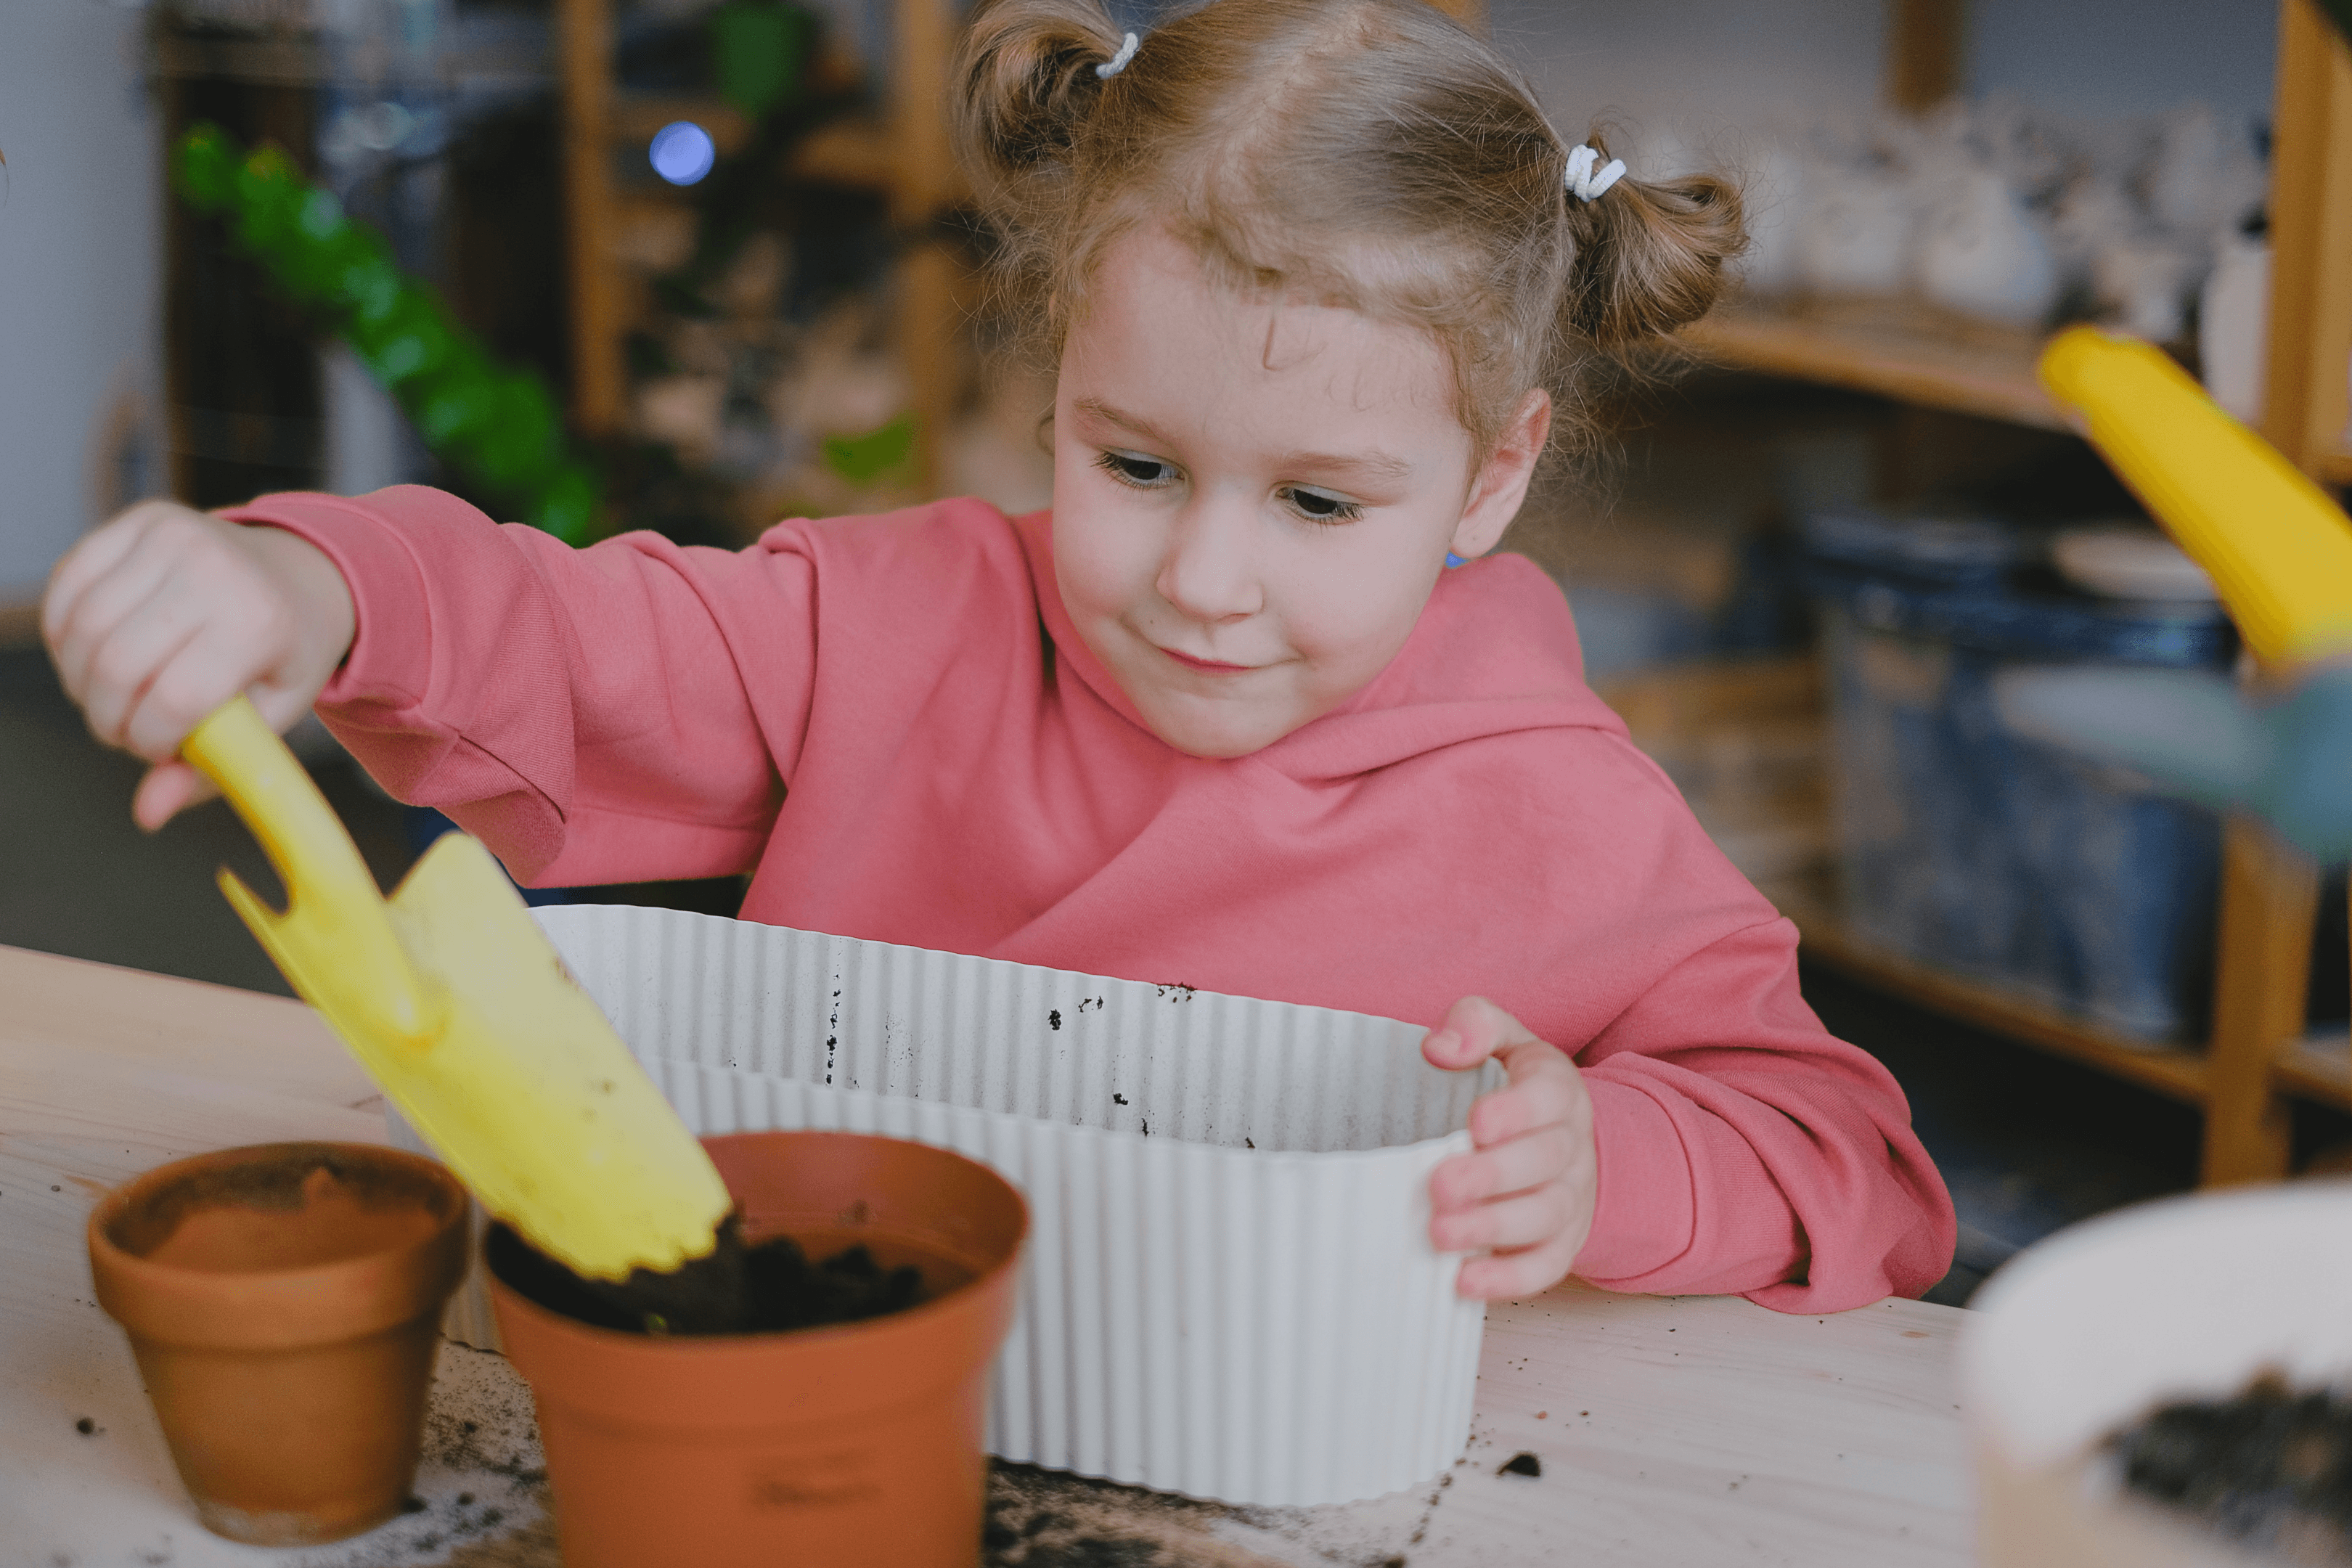 a girl putting soil in a pot using a garden trowel